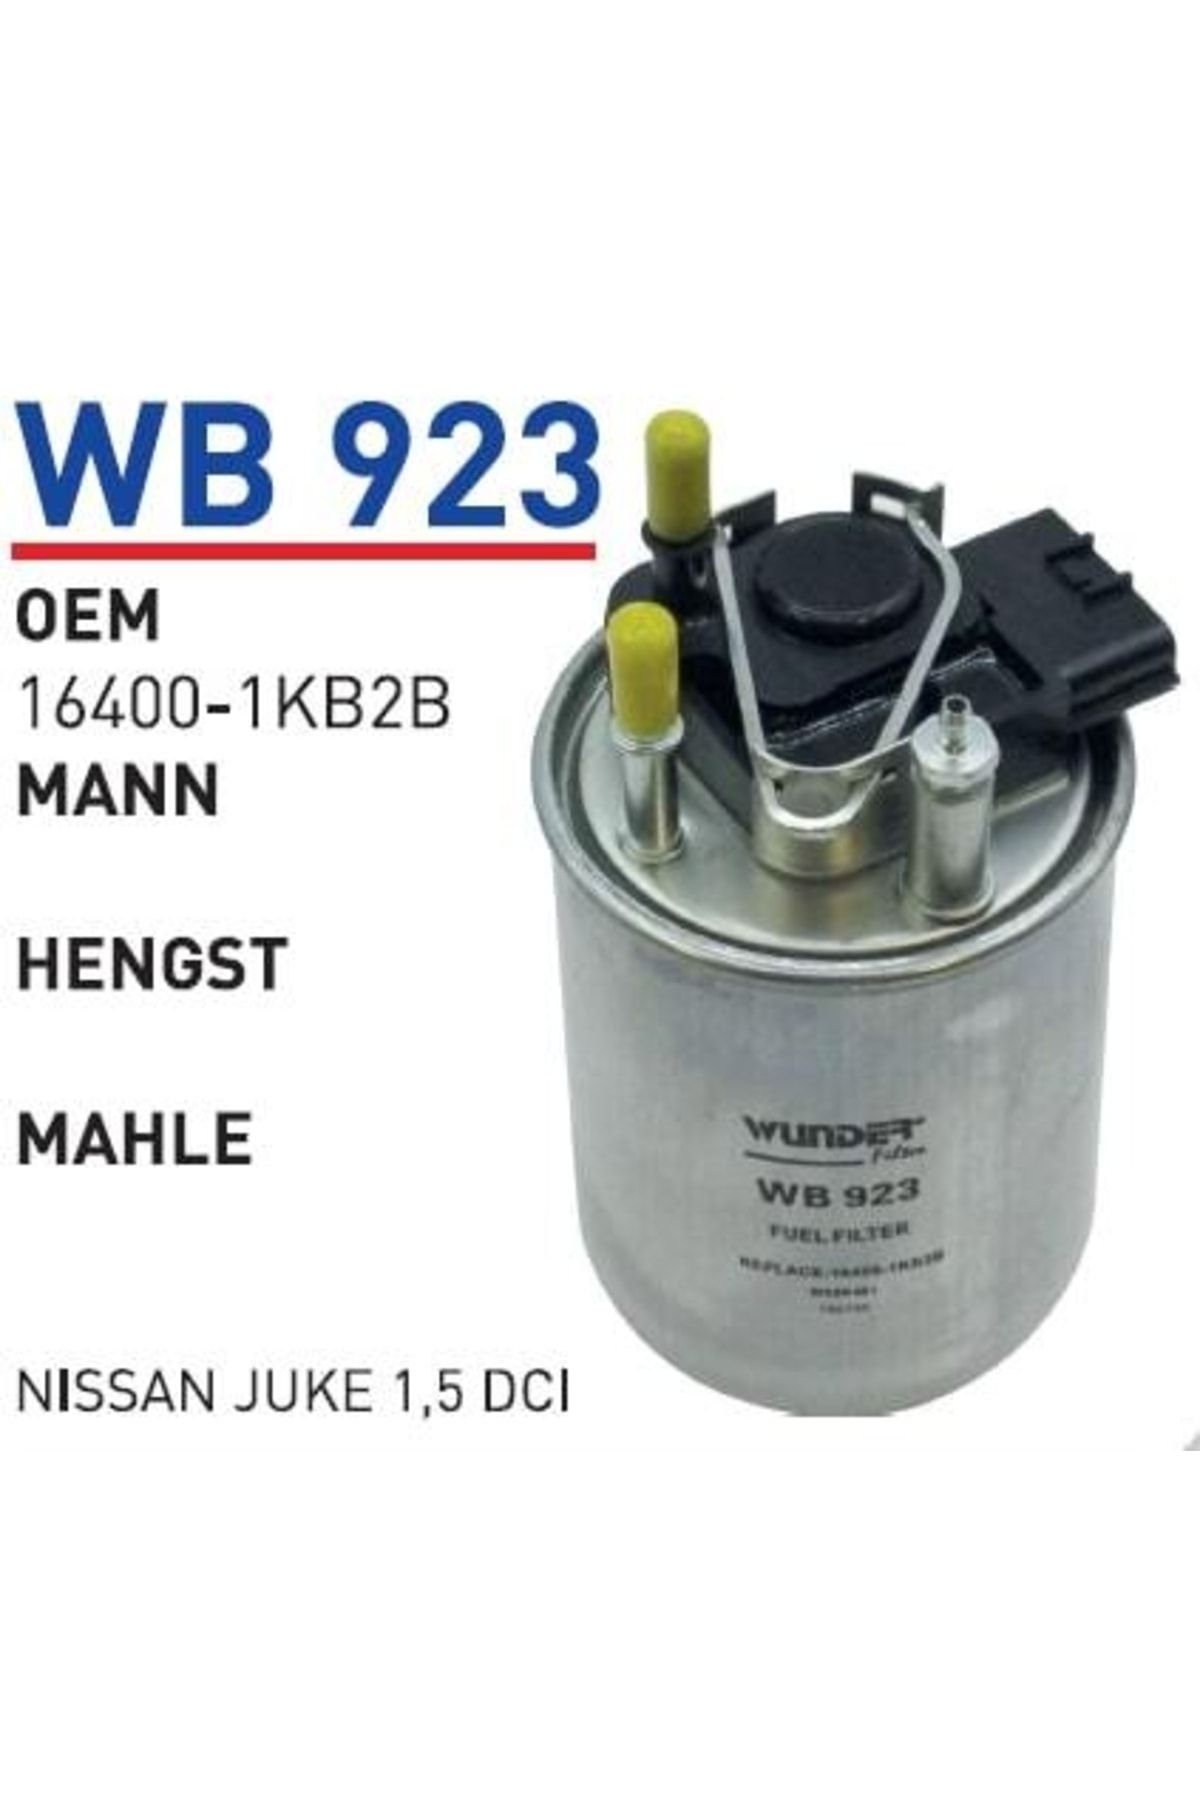 WUNDER Wb923 Mazot Filtresi - Nissan Juke 1,5 Dci